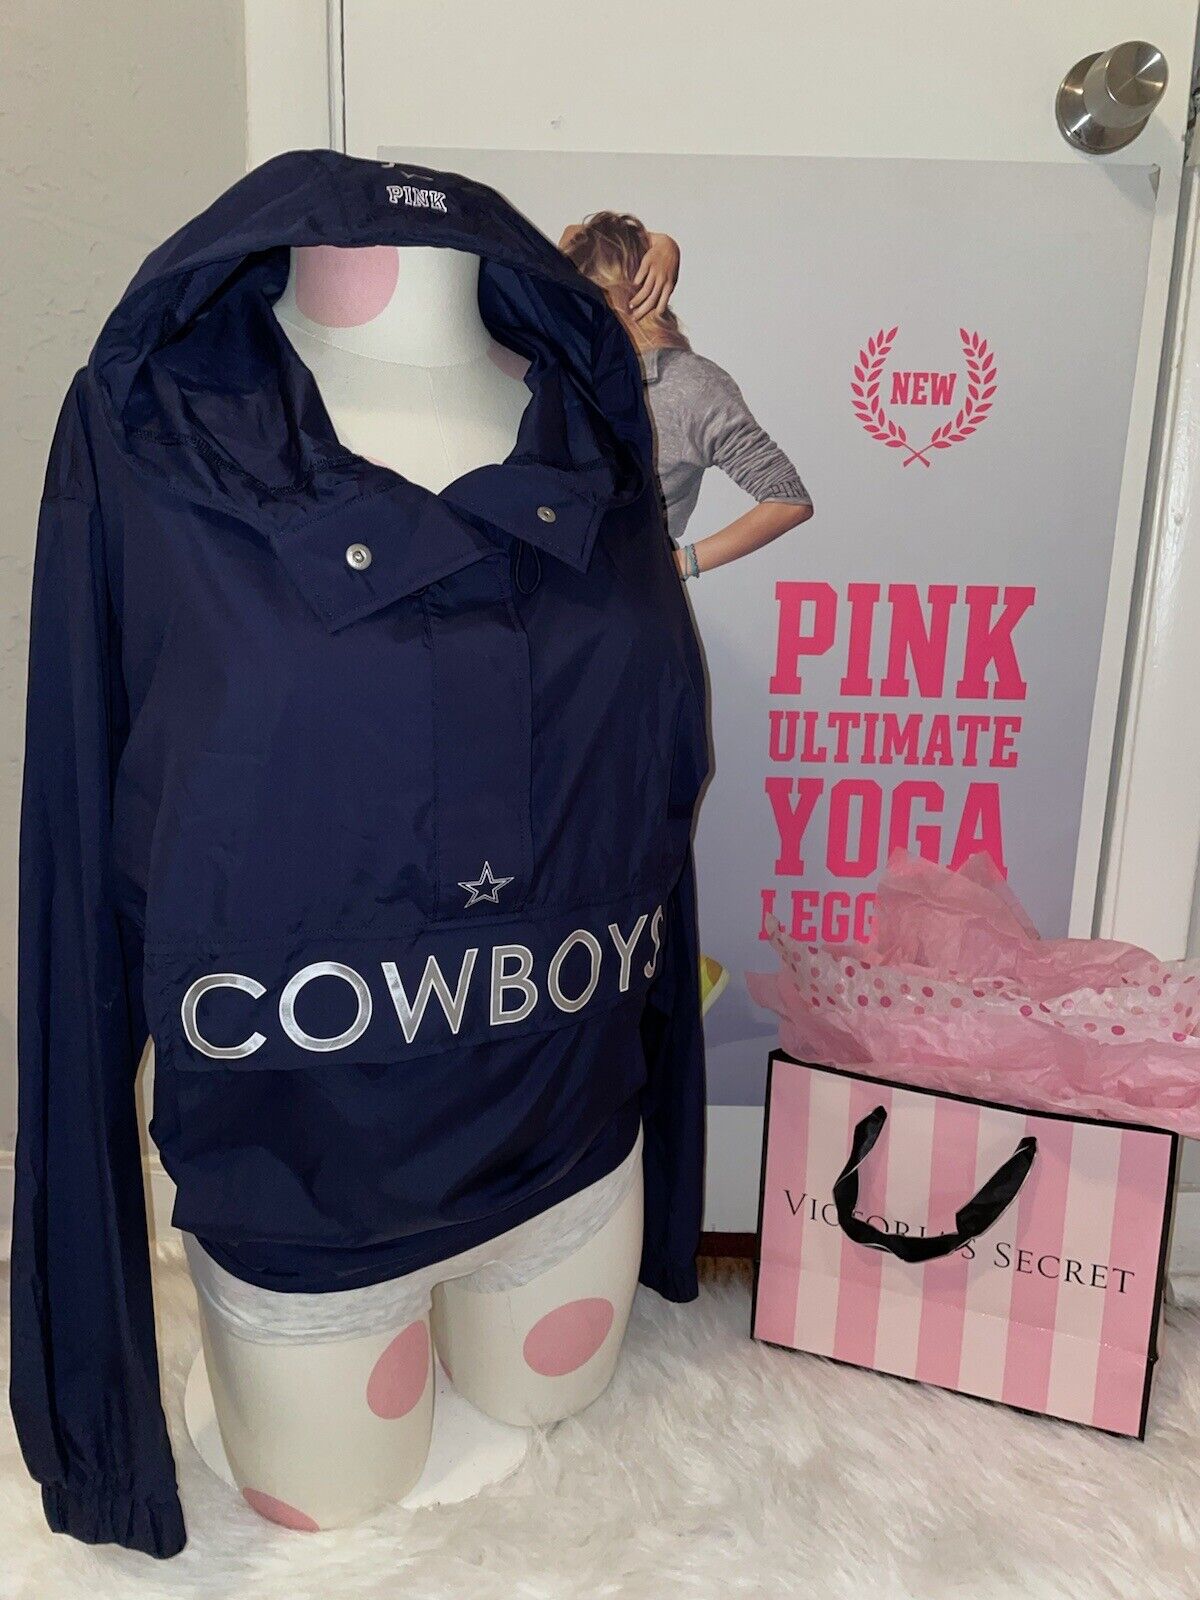 pink dallas cowboys jacket